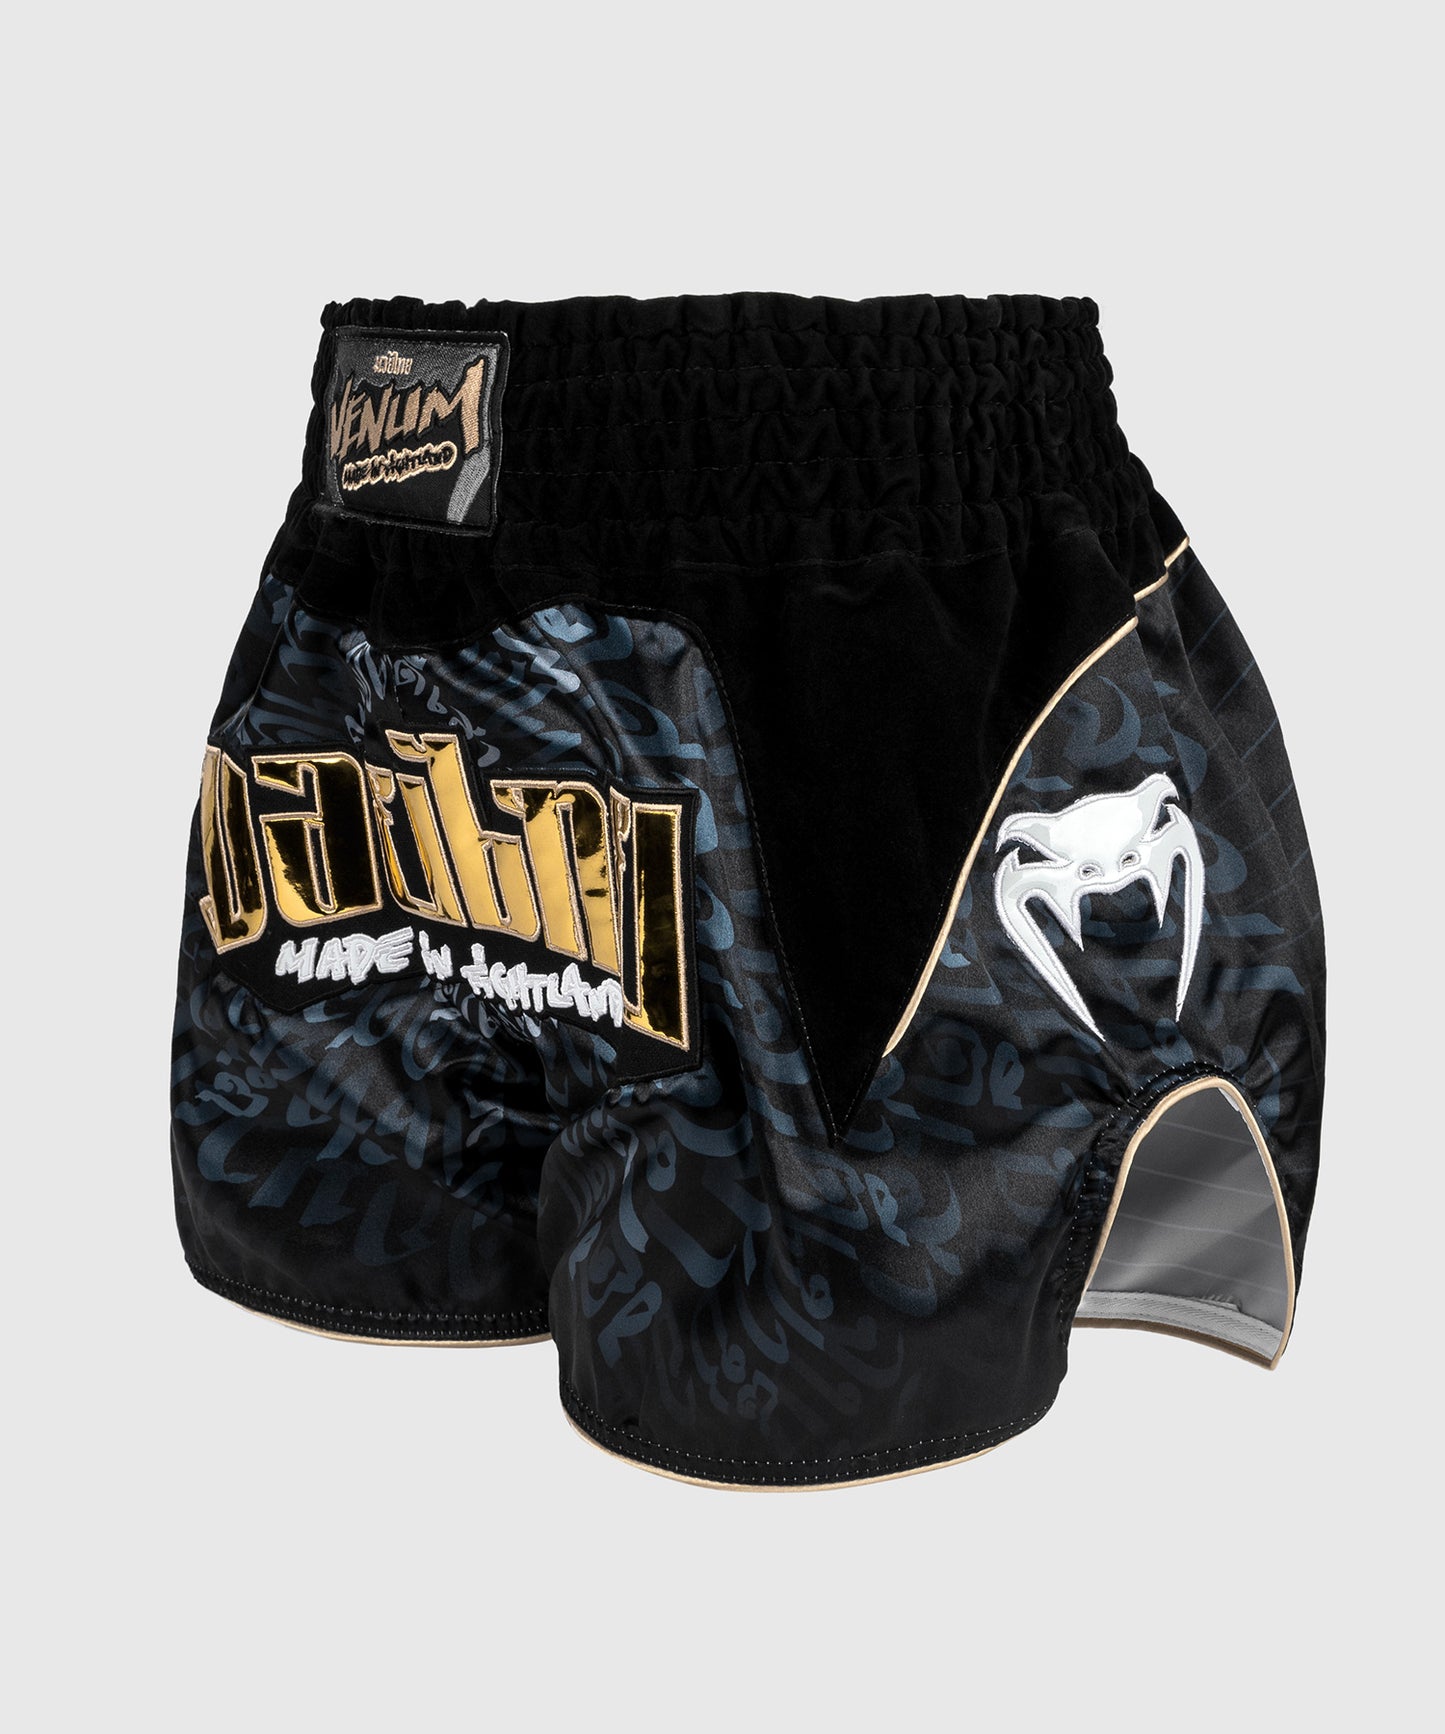 Venum Attack Shorts de Muay Thai - Negro/Gris